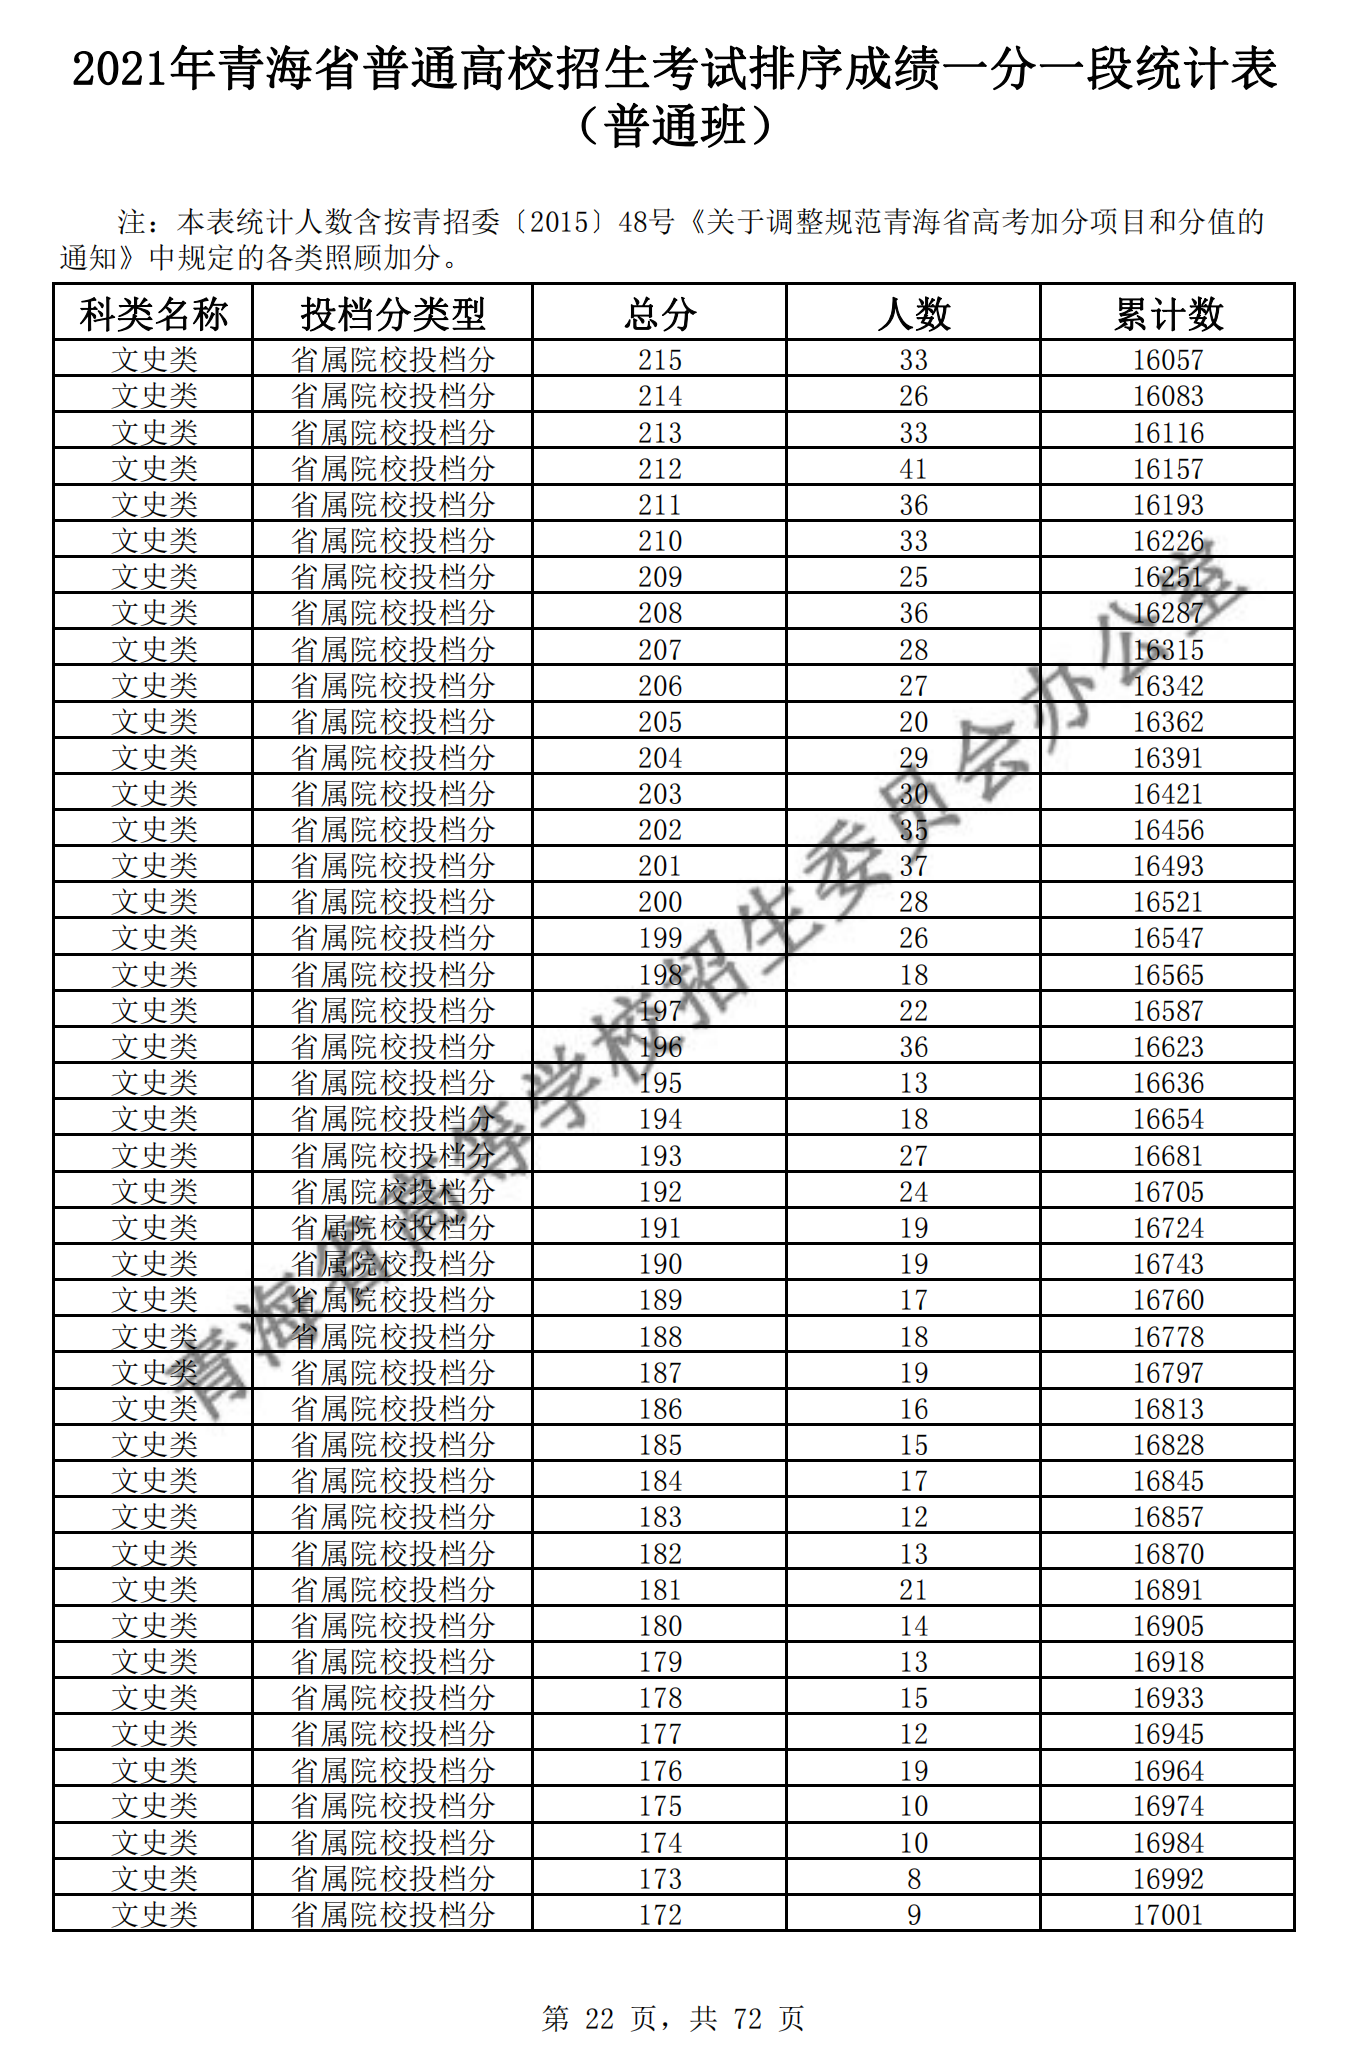 2021青海高考一分一段表及位次排名查询(文科)